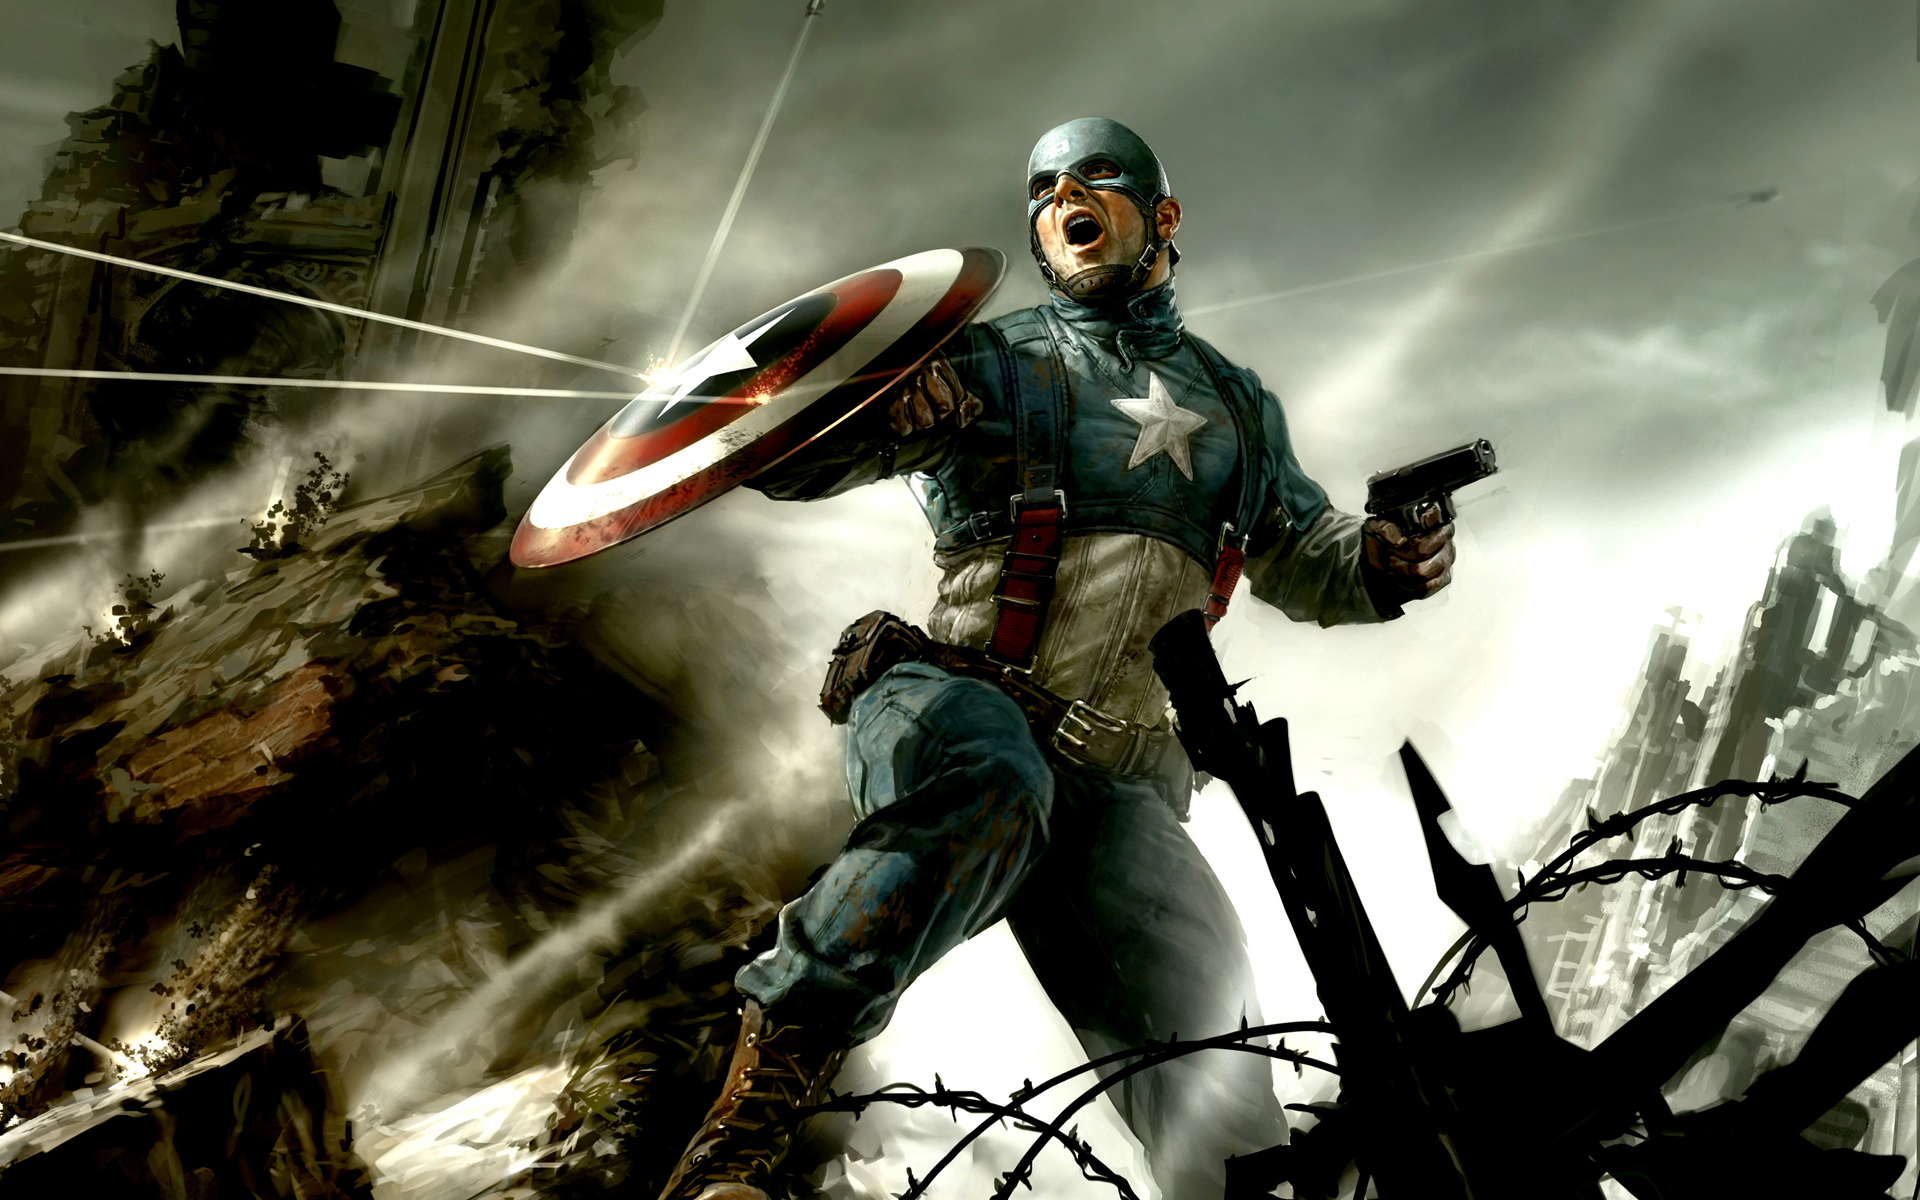 capitán américa hd fondo de pantalla descargar,juego de acción y aventura,juego de pc,personaje de ficción,cg artwork,juegos